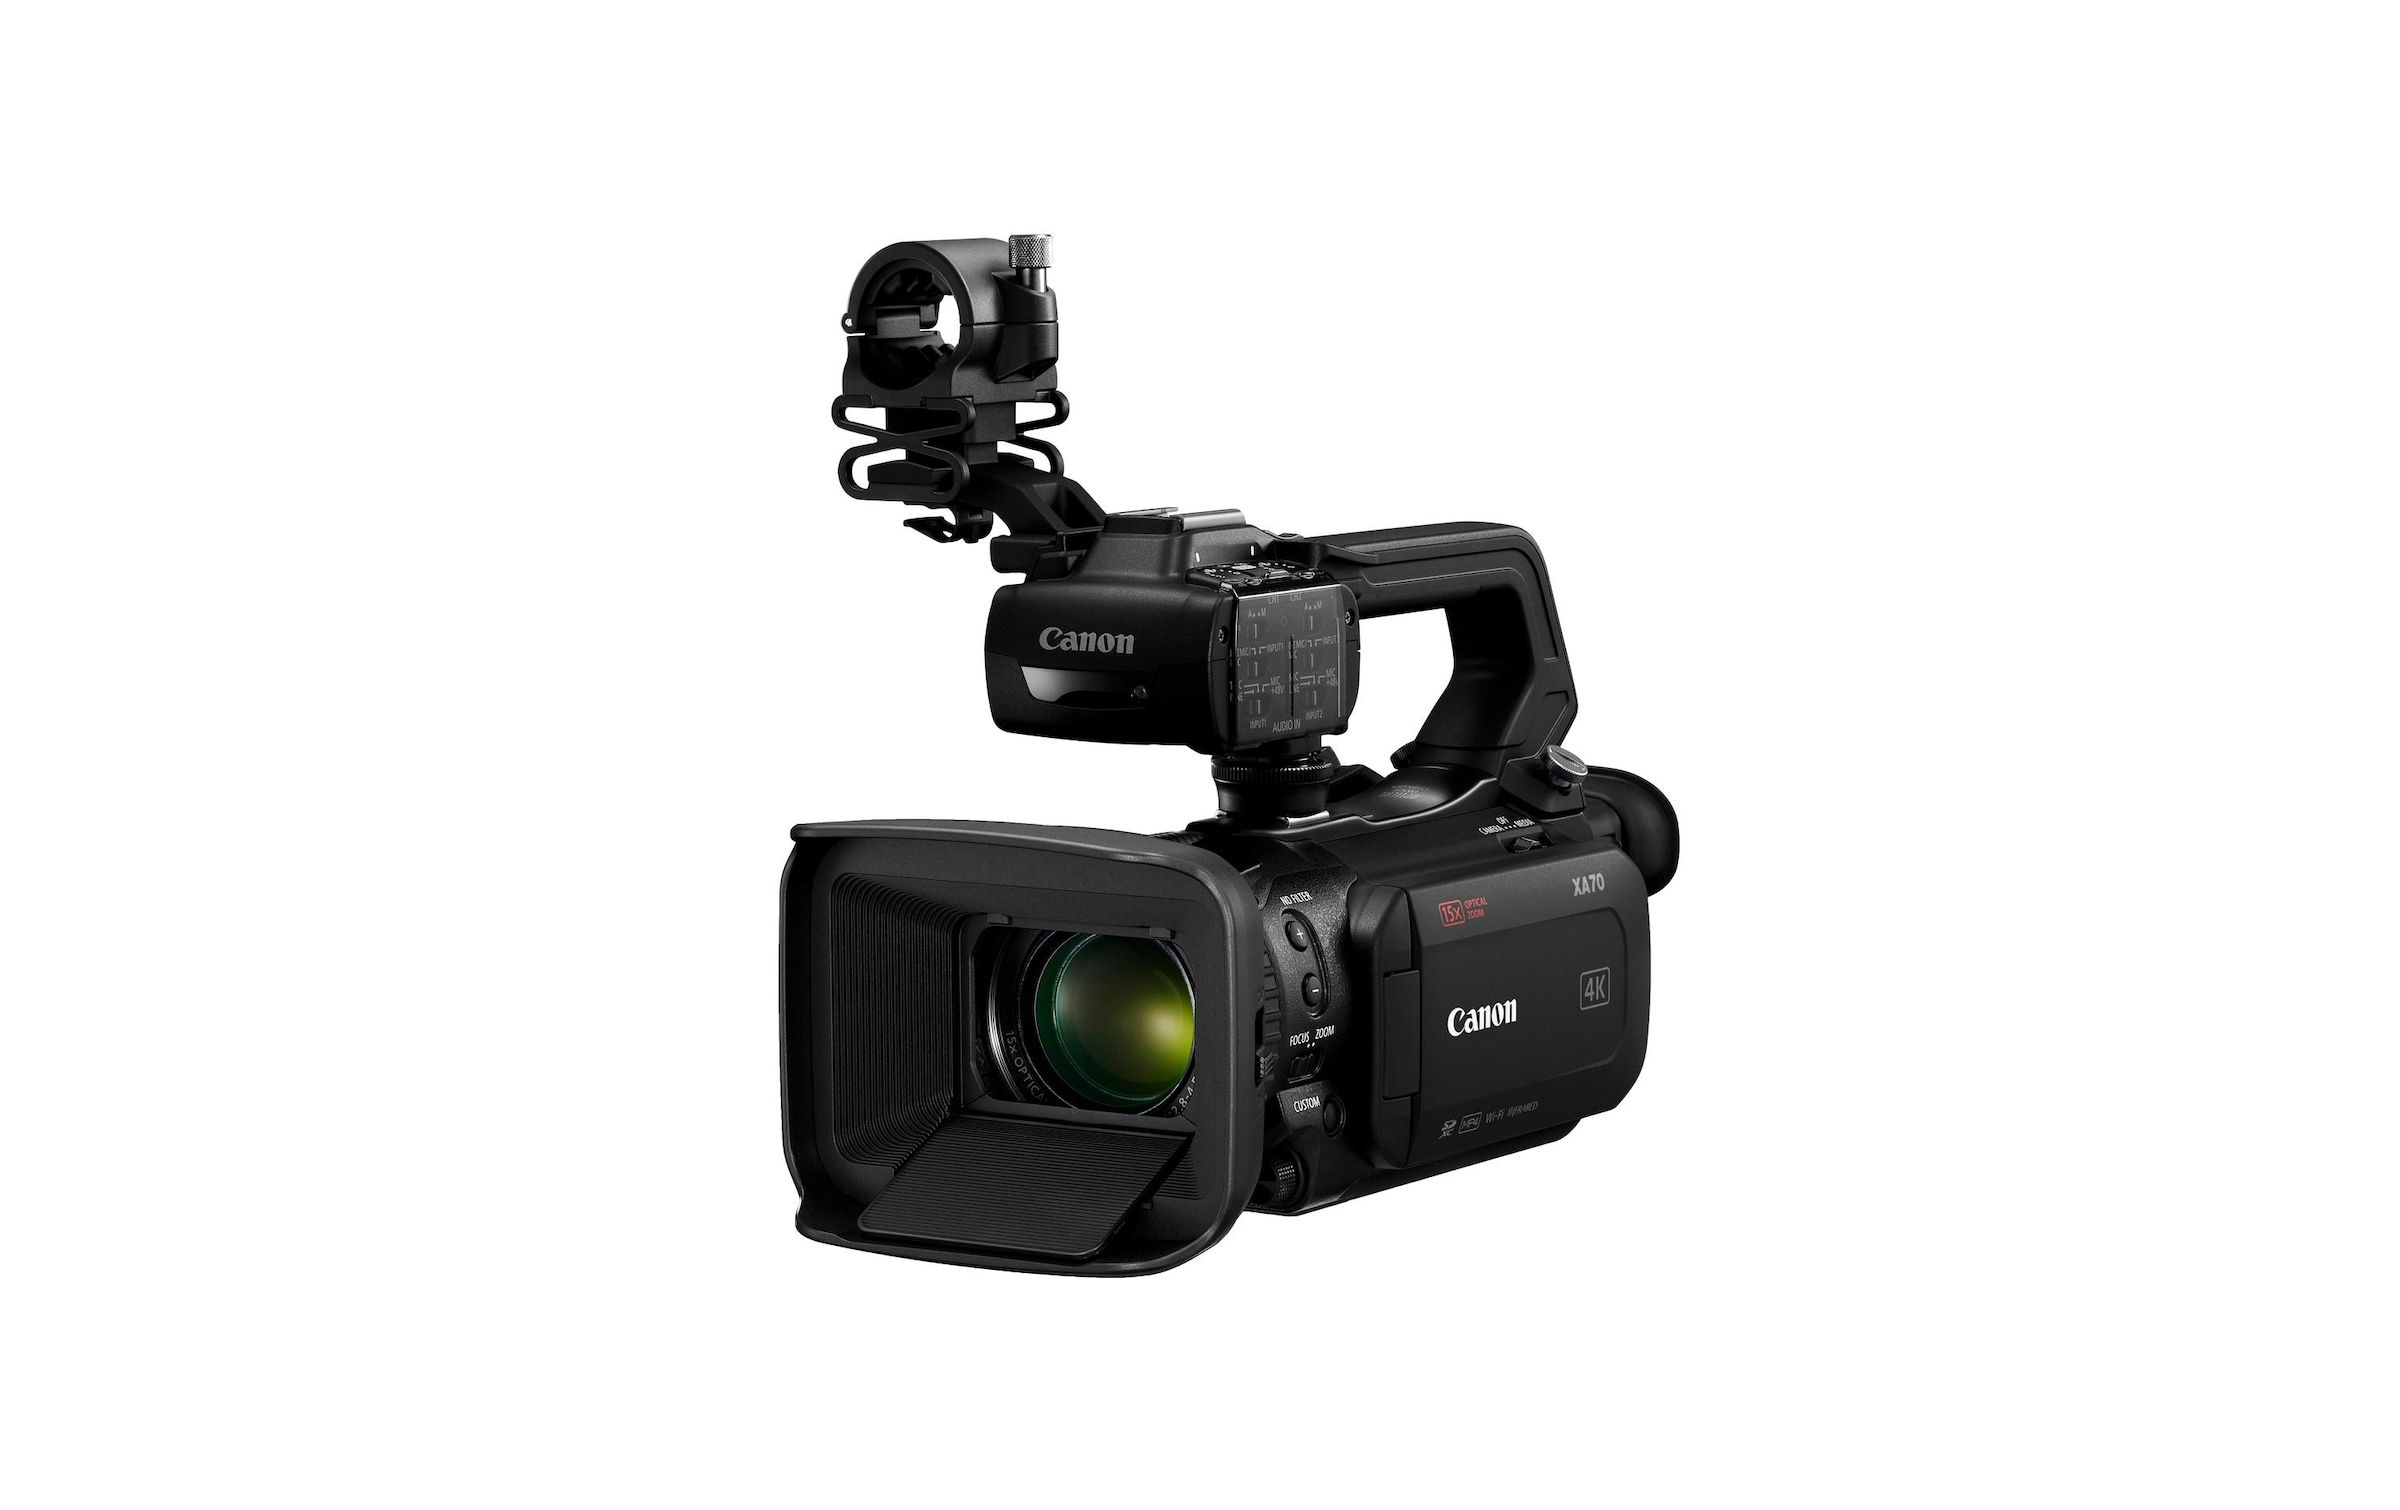 Canon Videokamera »Canon Camcorder XA70«, 15 fachx opt. Zoom